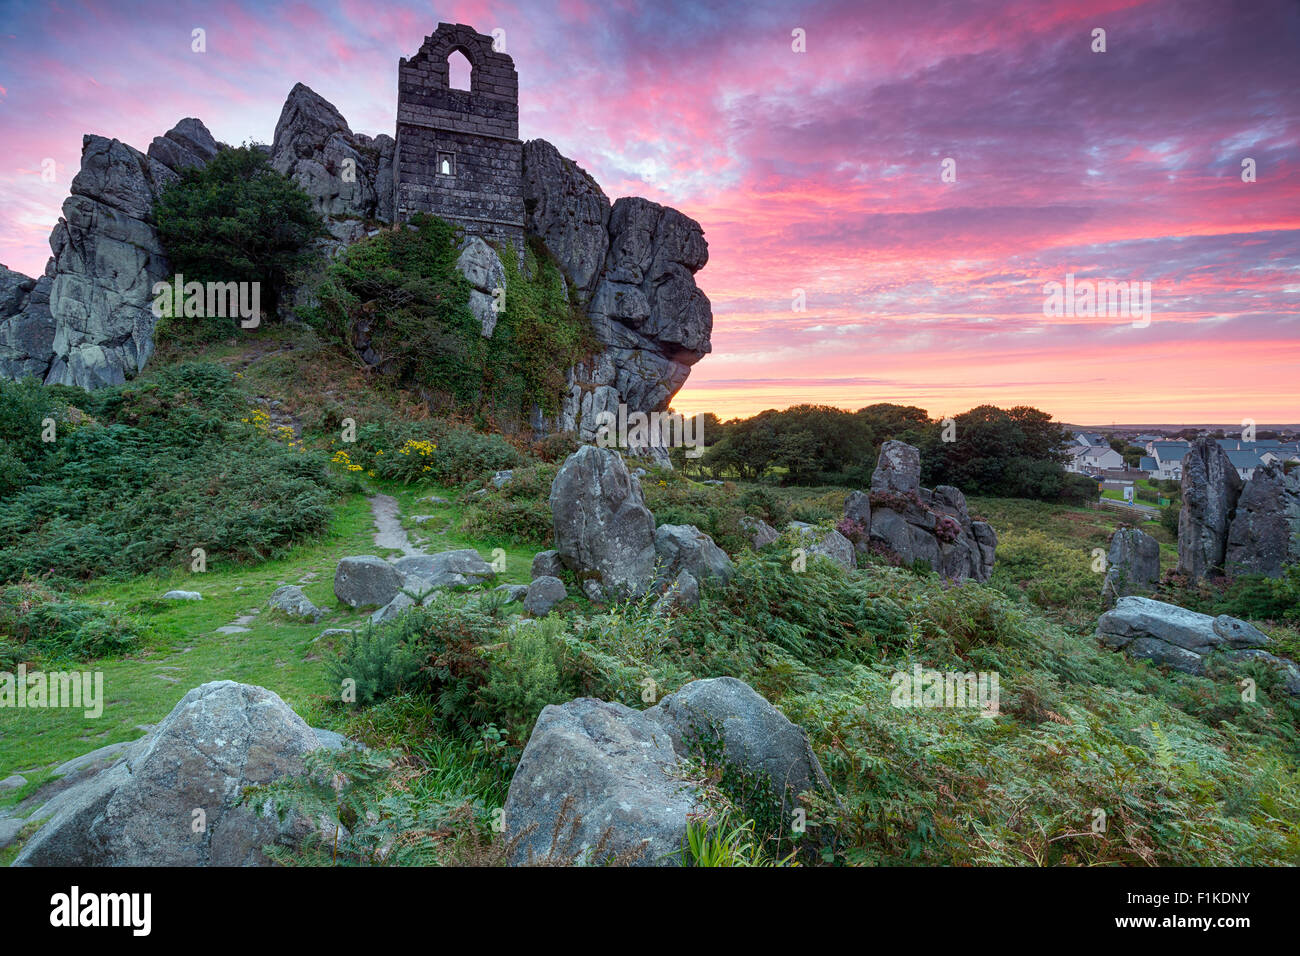 Dramatischen Sonnenuntergang Himmel über Roche Felsen thront die Ruinen einer alten Kapelle auf einem Felsvorsprung des Granits bei Roche in der Nähe von St Auste Stockfoto